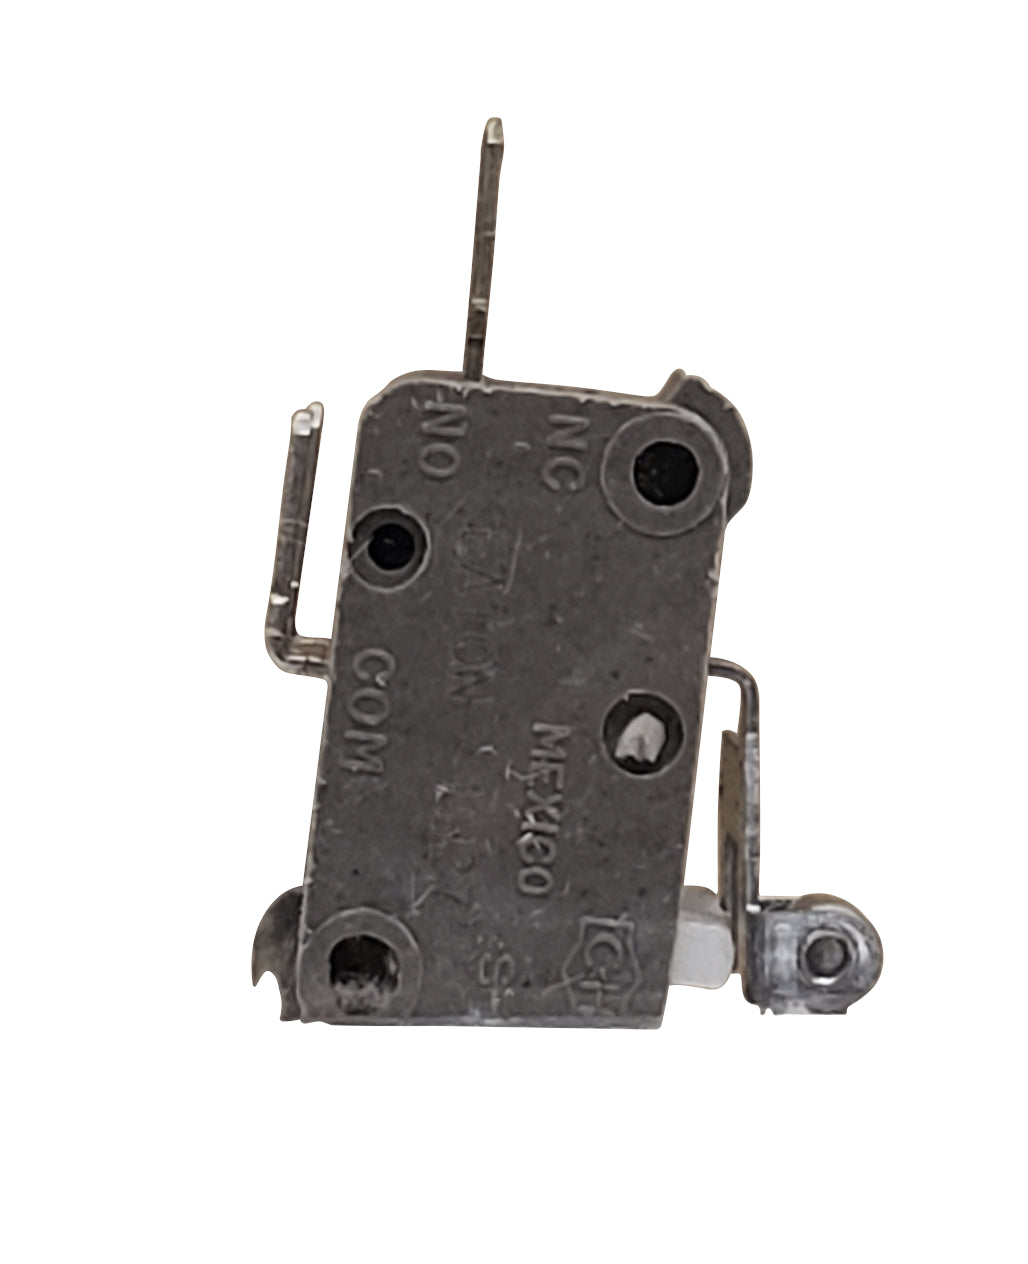 John Deere Original Equipment Switch - AM36828